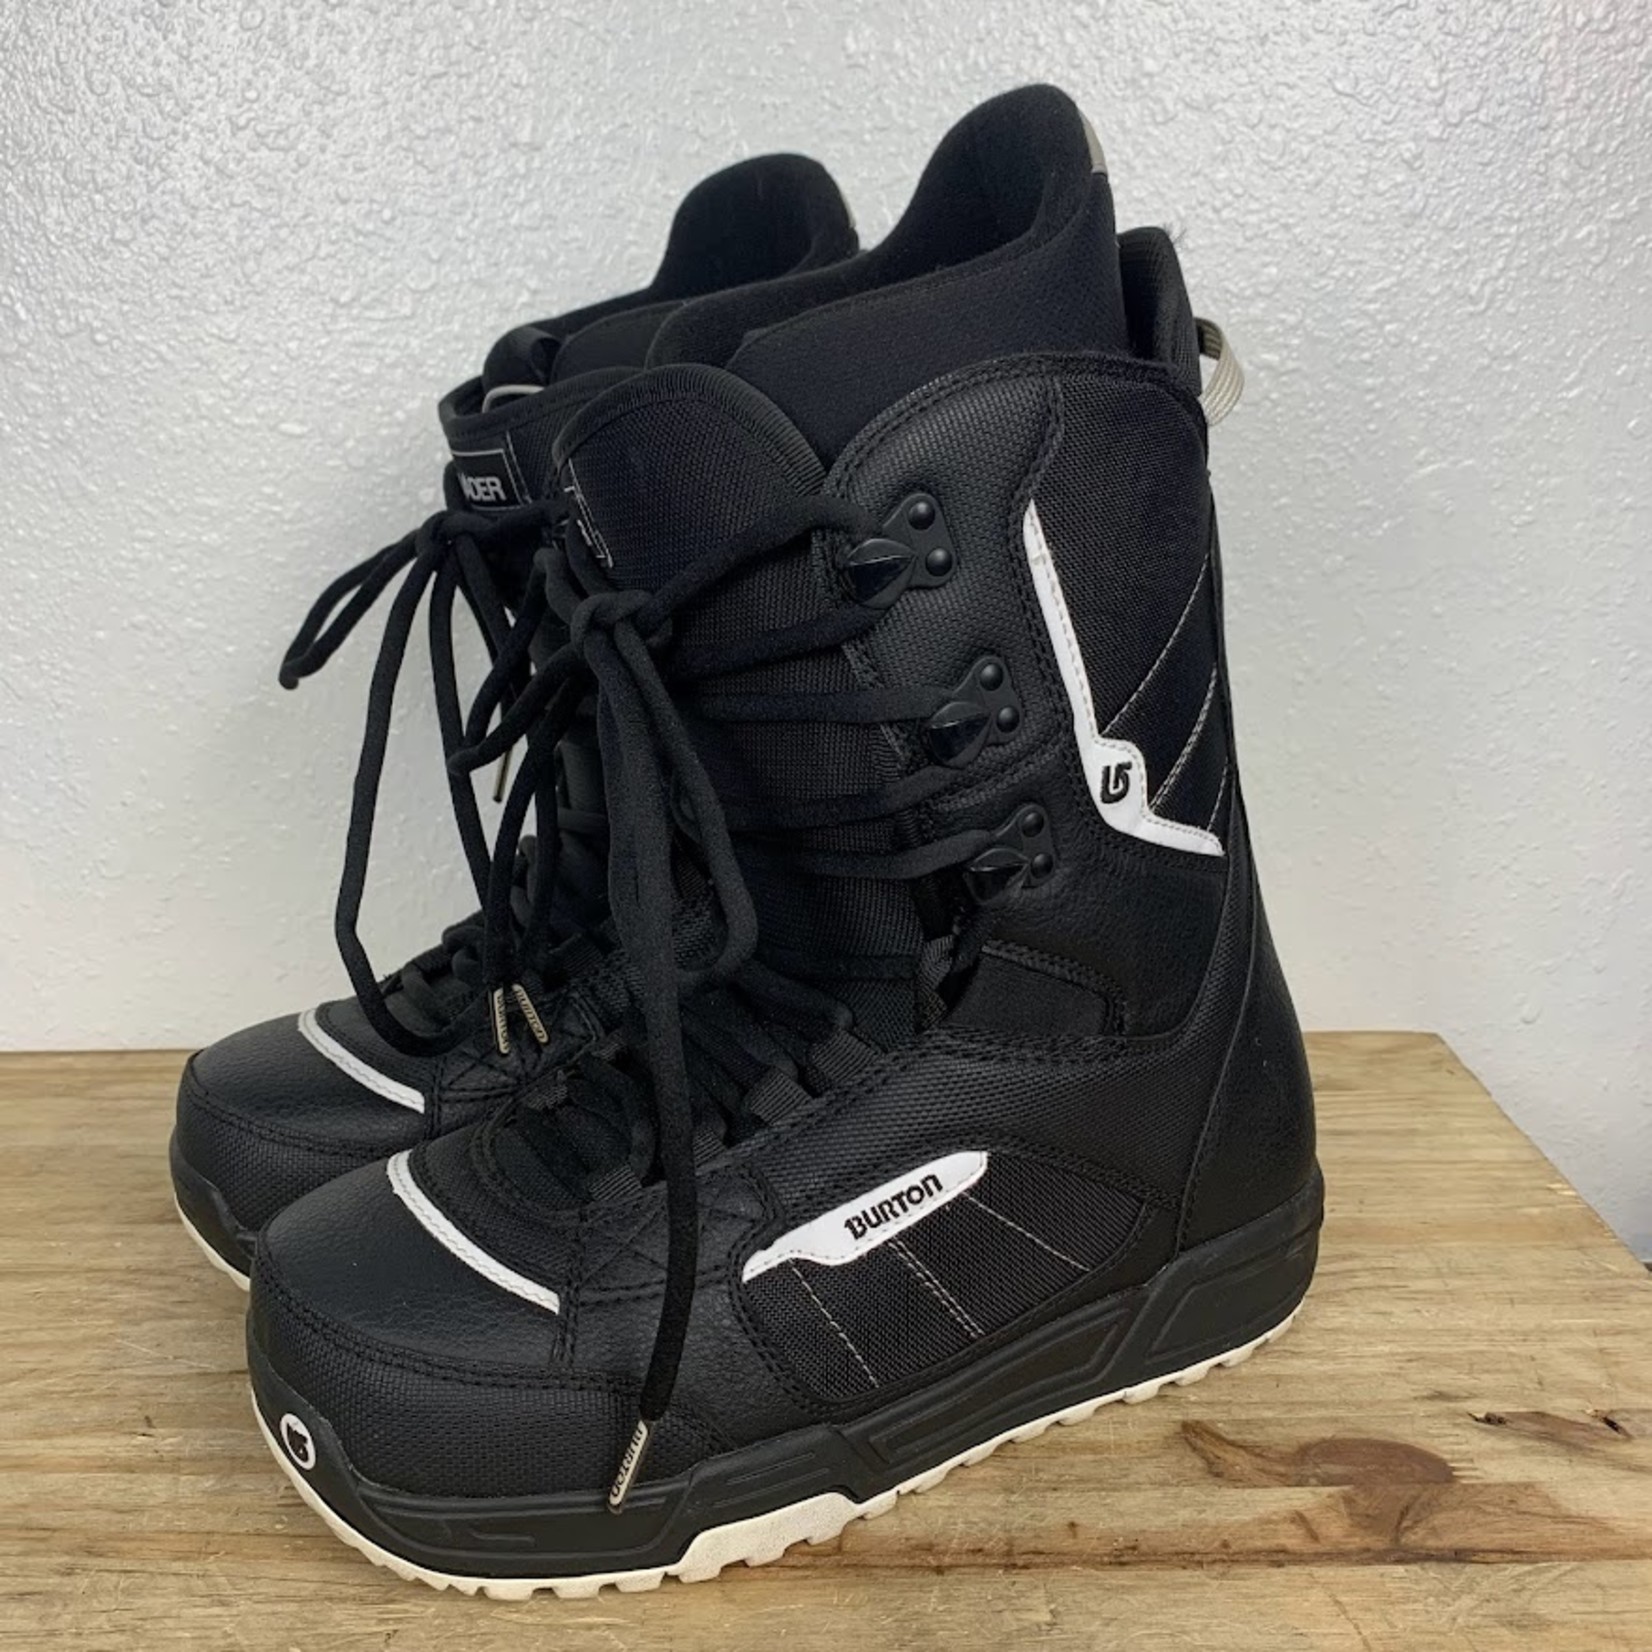 Burton Burton Invader Snowboard Boots, Size 9 MENS